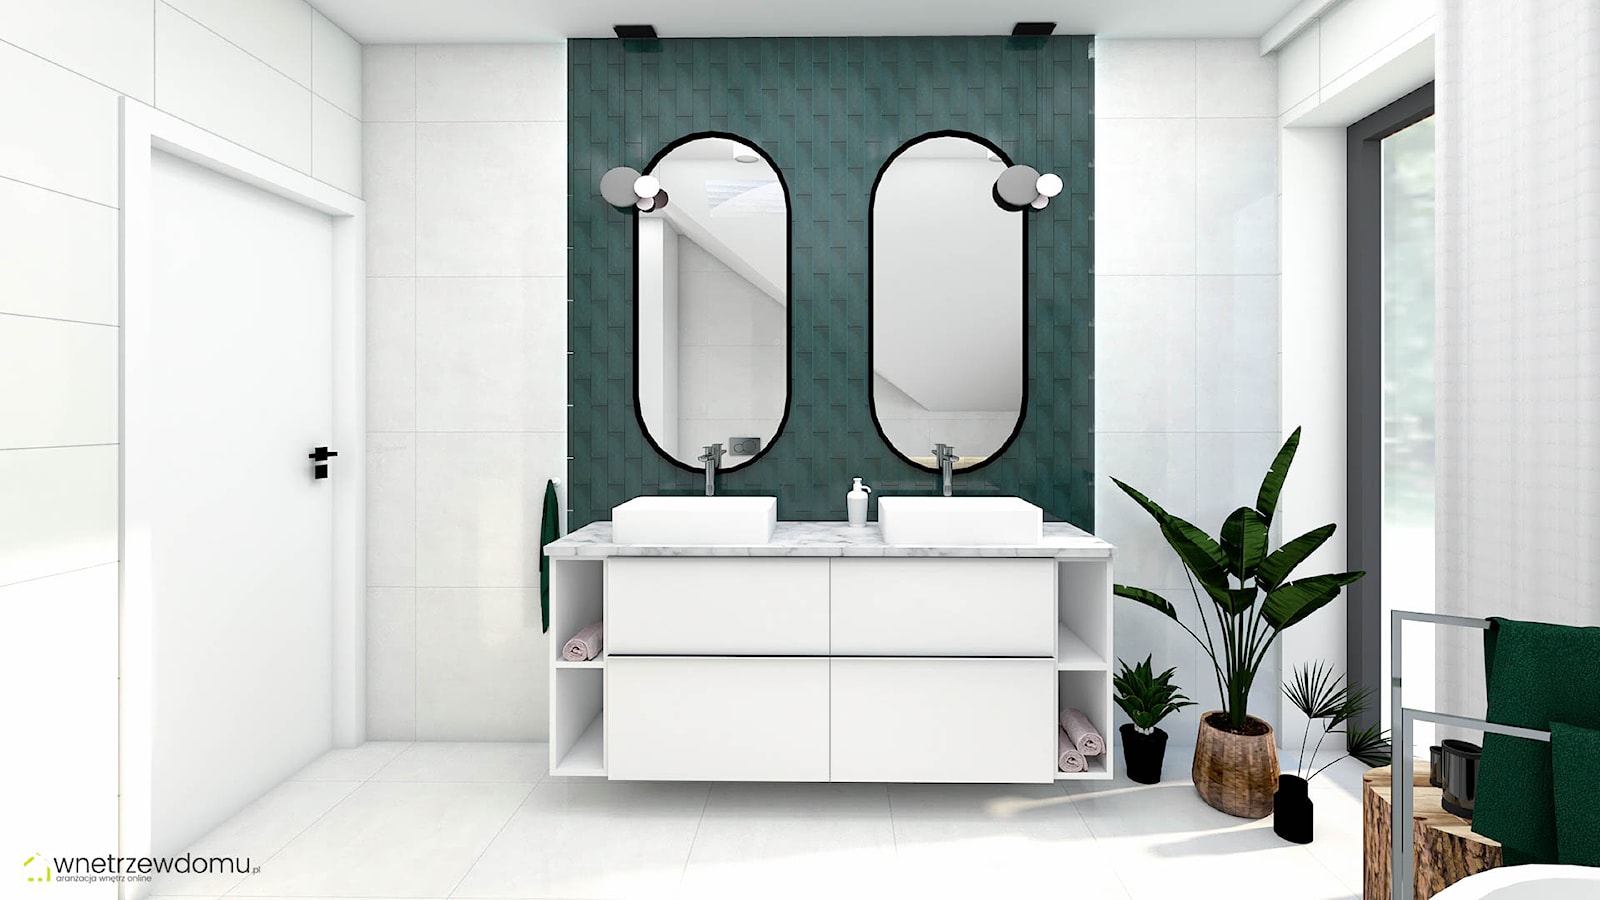 Łazienka z dwoma dużymi lustrami - zdjęcie od wnetrzewdomu - Homebook